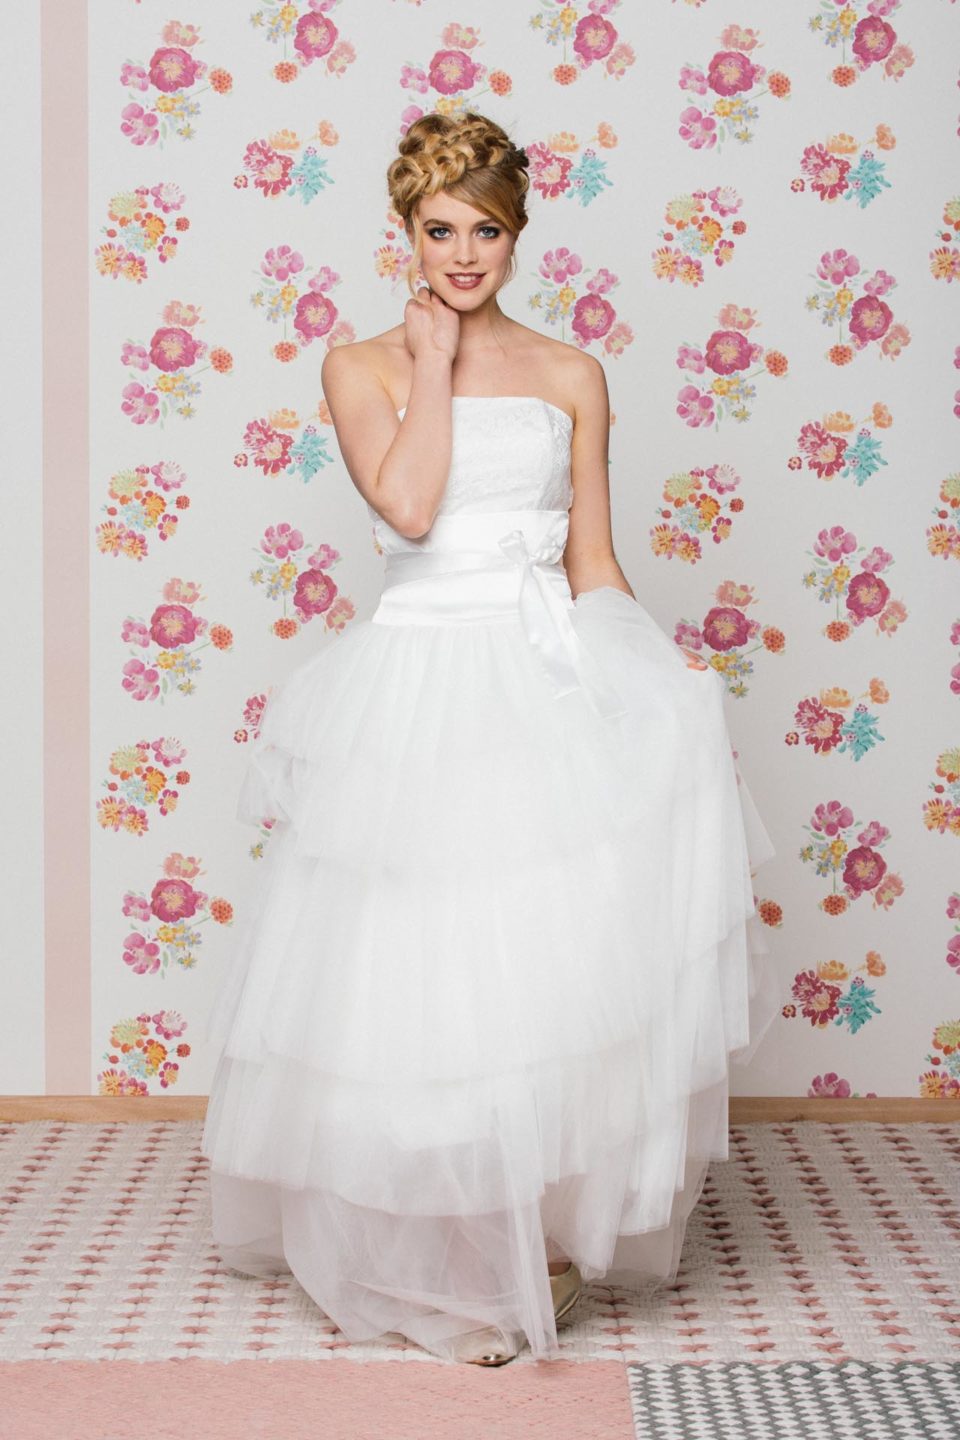 Brautkleid kurz petticoat - Vertrauen Sie dem Gewinner